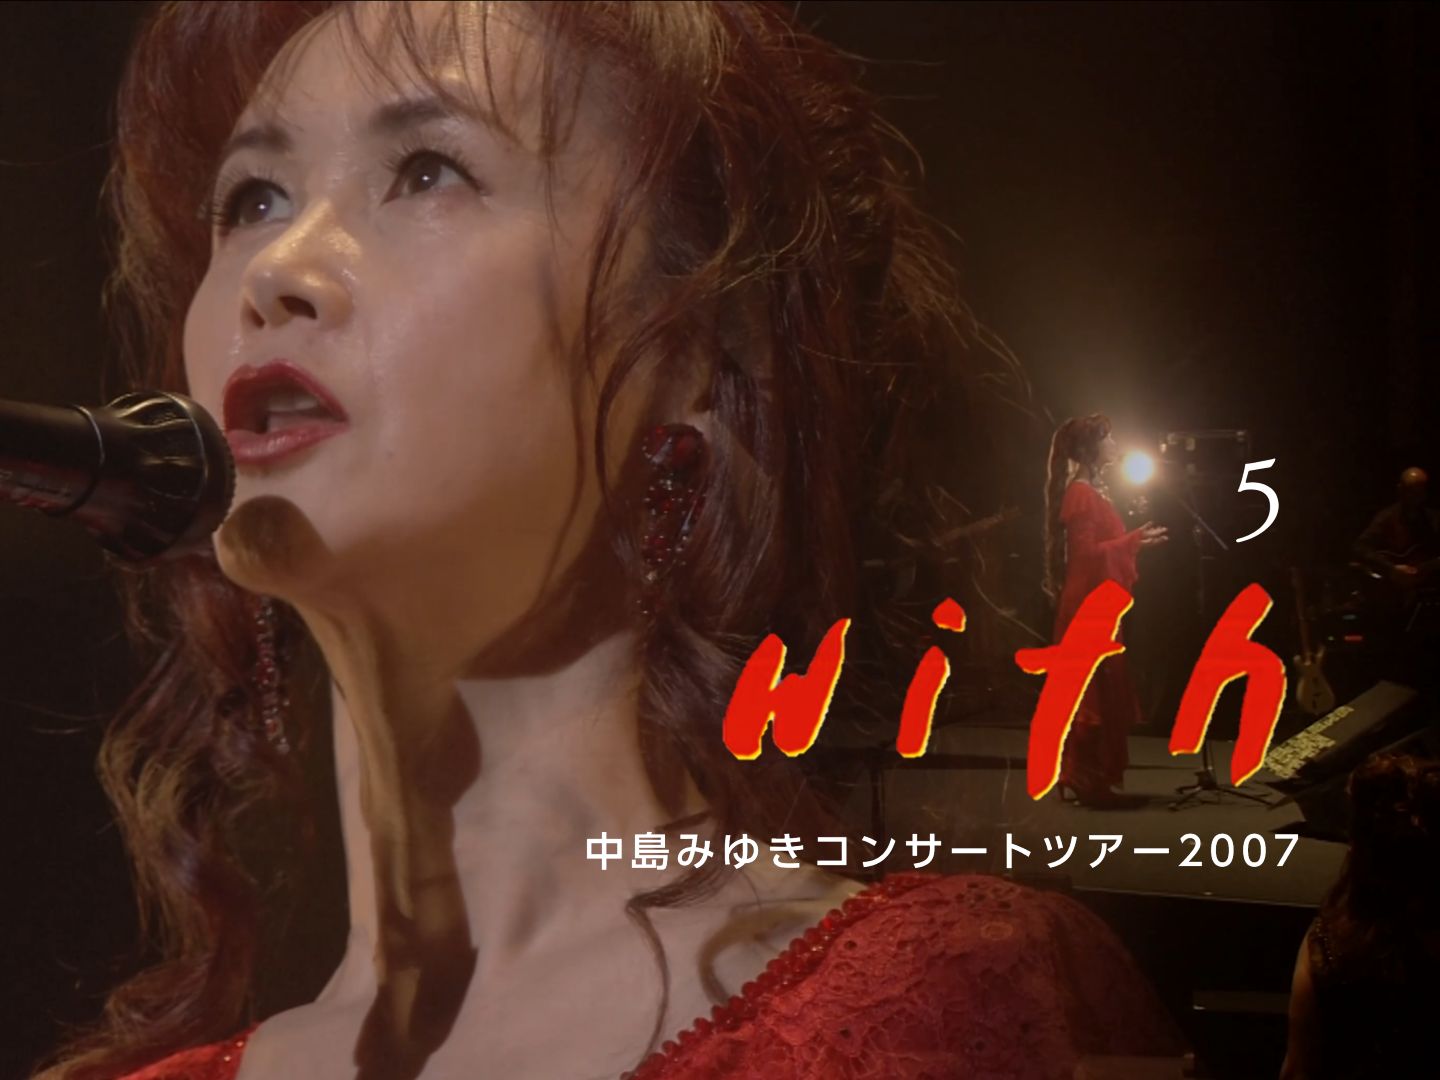 【中岛美雪】with（与你）-中島みゆきコンサートツアー2007